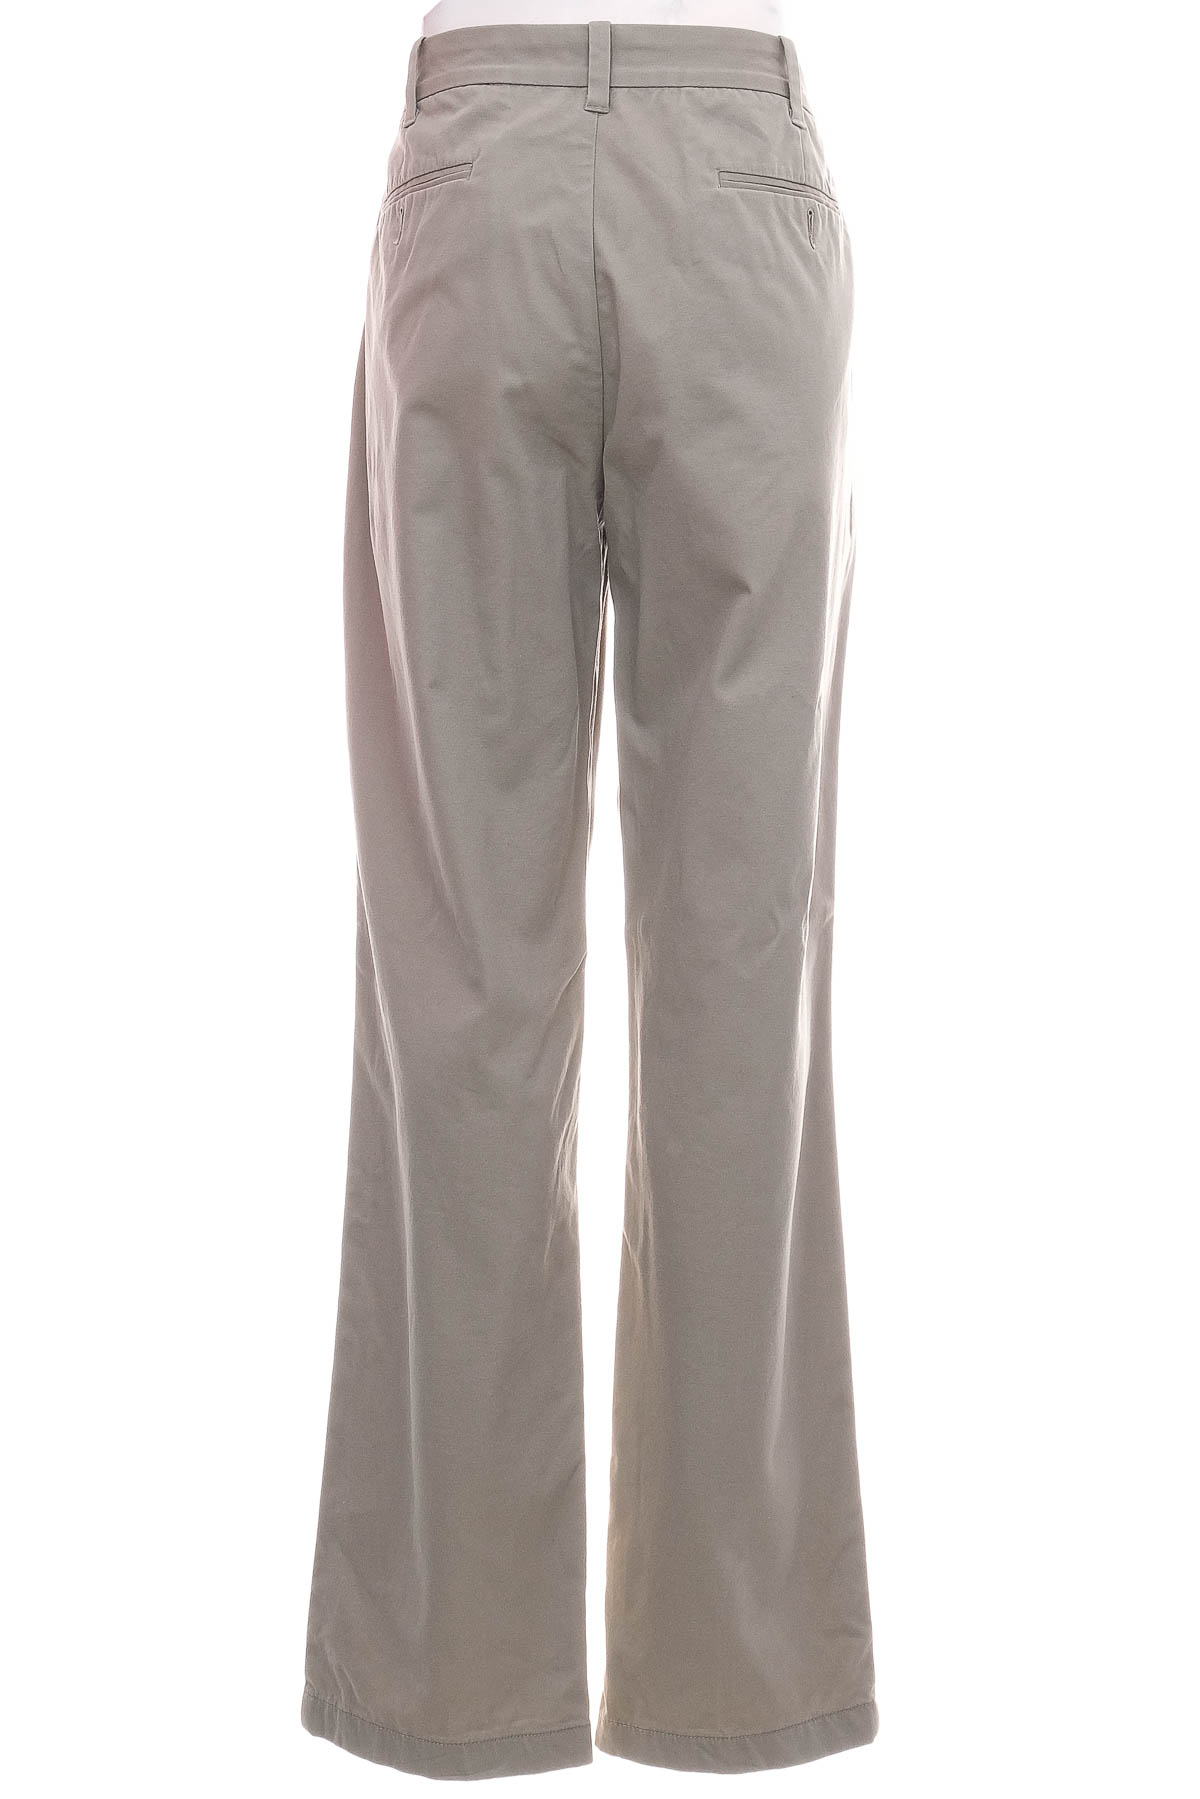 Pantalon pentru bărbați - NAUTICA - 1